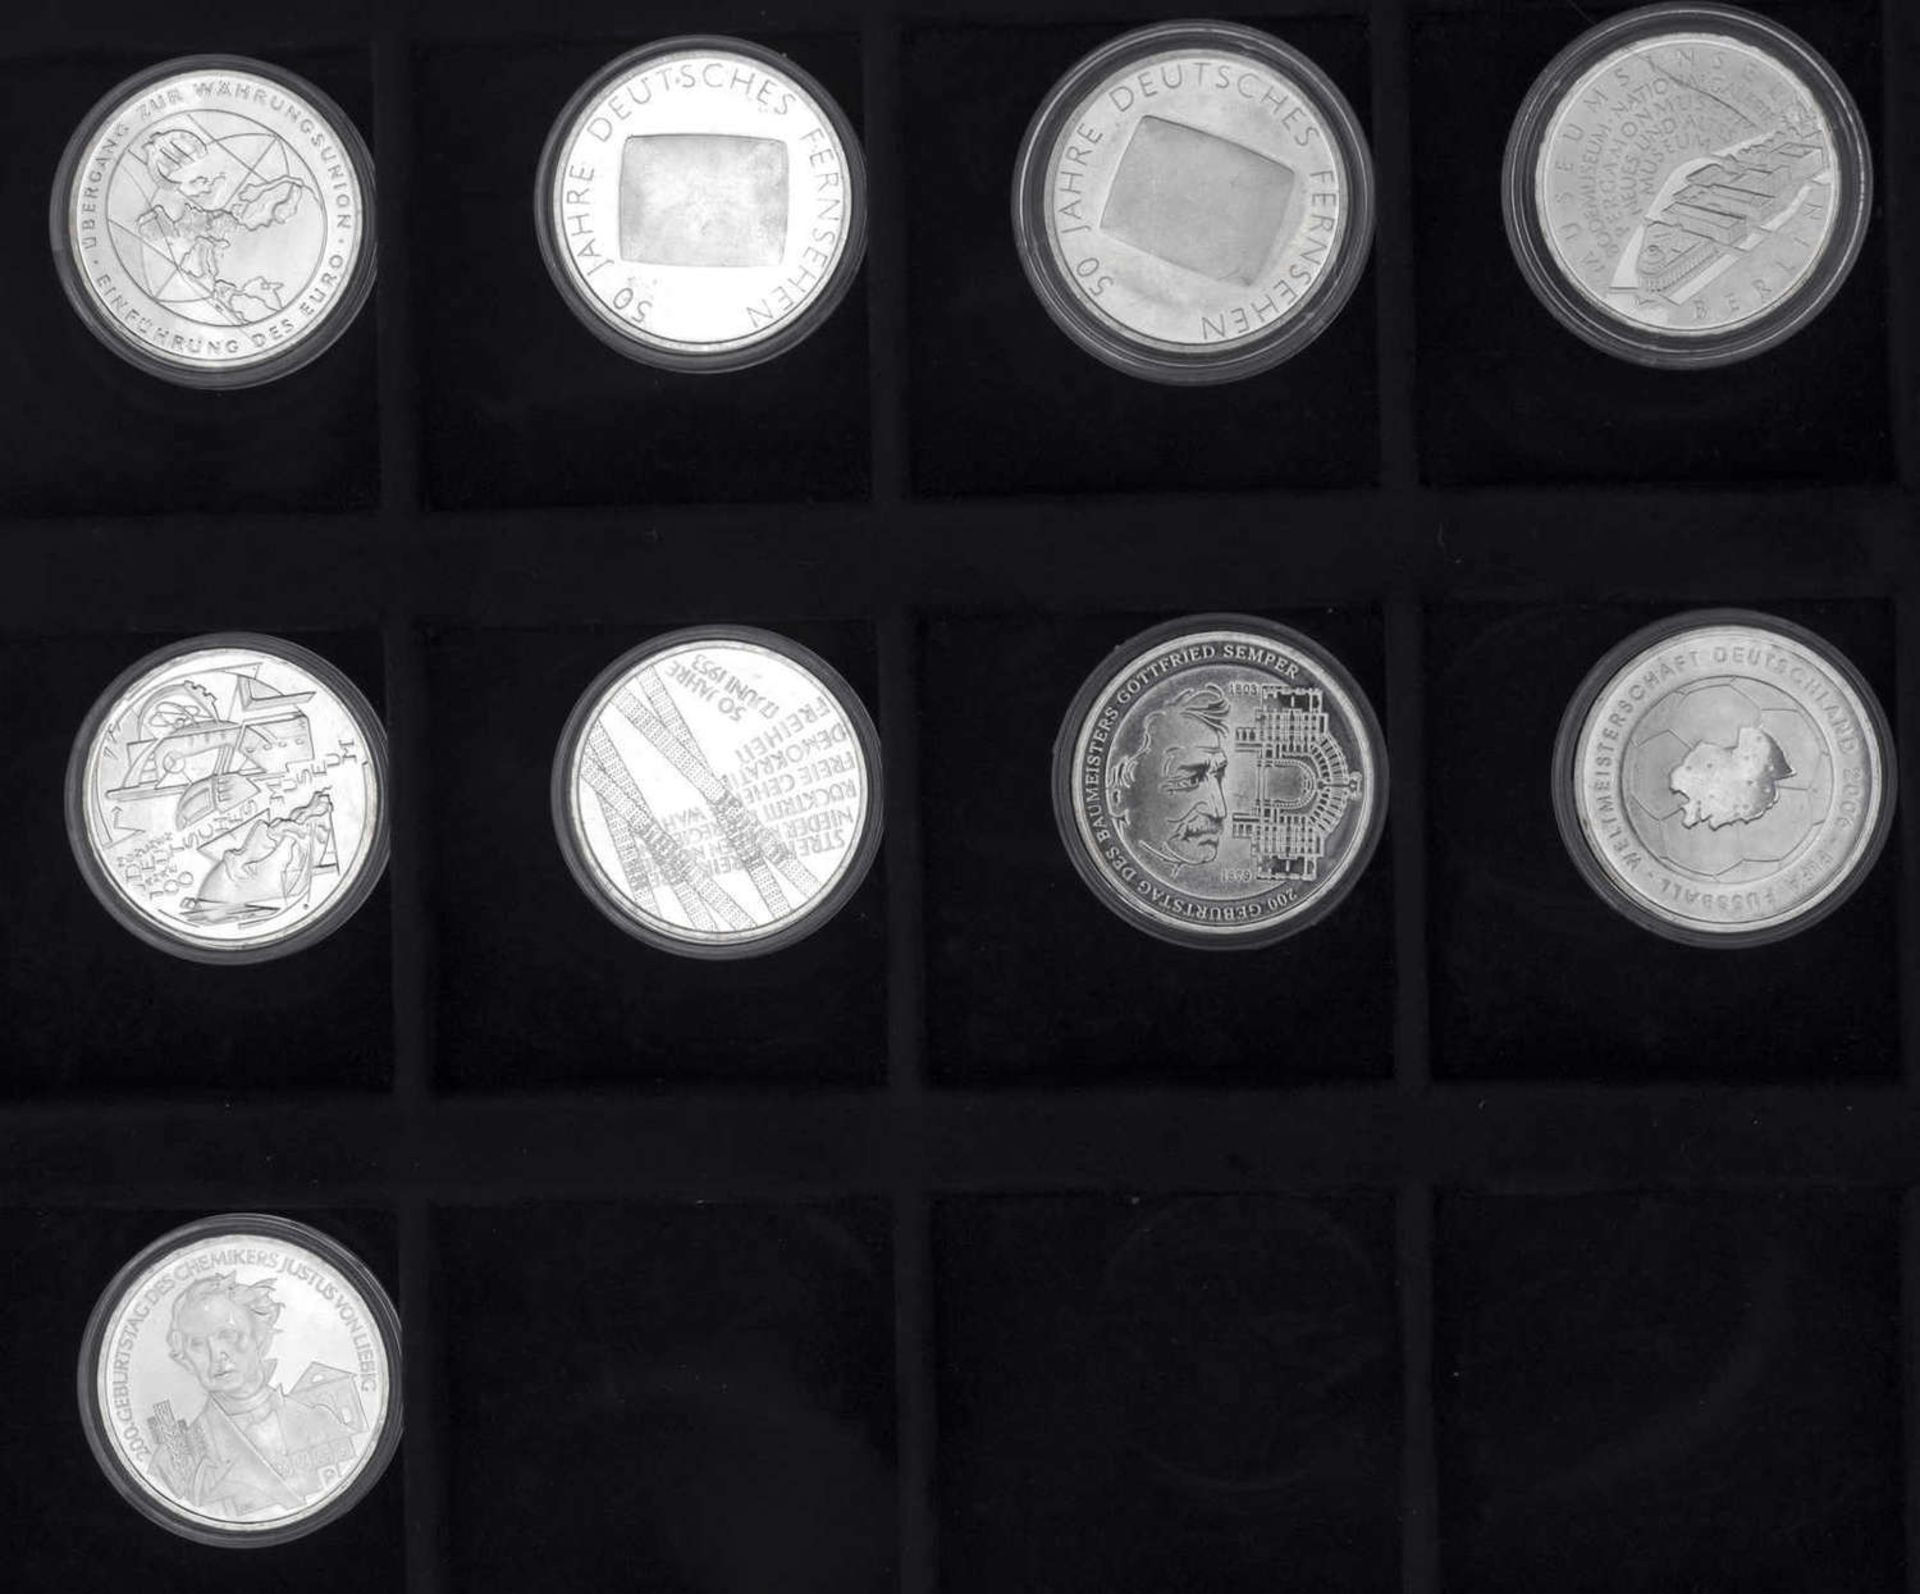 BRD 2002/03, Sammlung 10.- Euro - Silbermünzen "50 Jahre Deutschland". Insgesamt 9 Münzen. Alle in